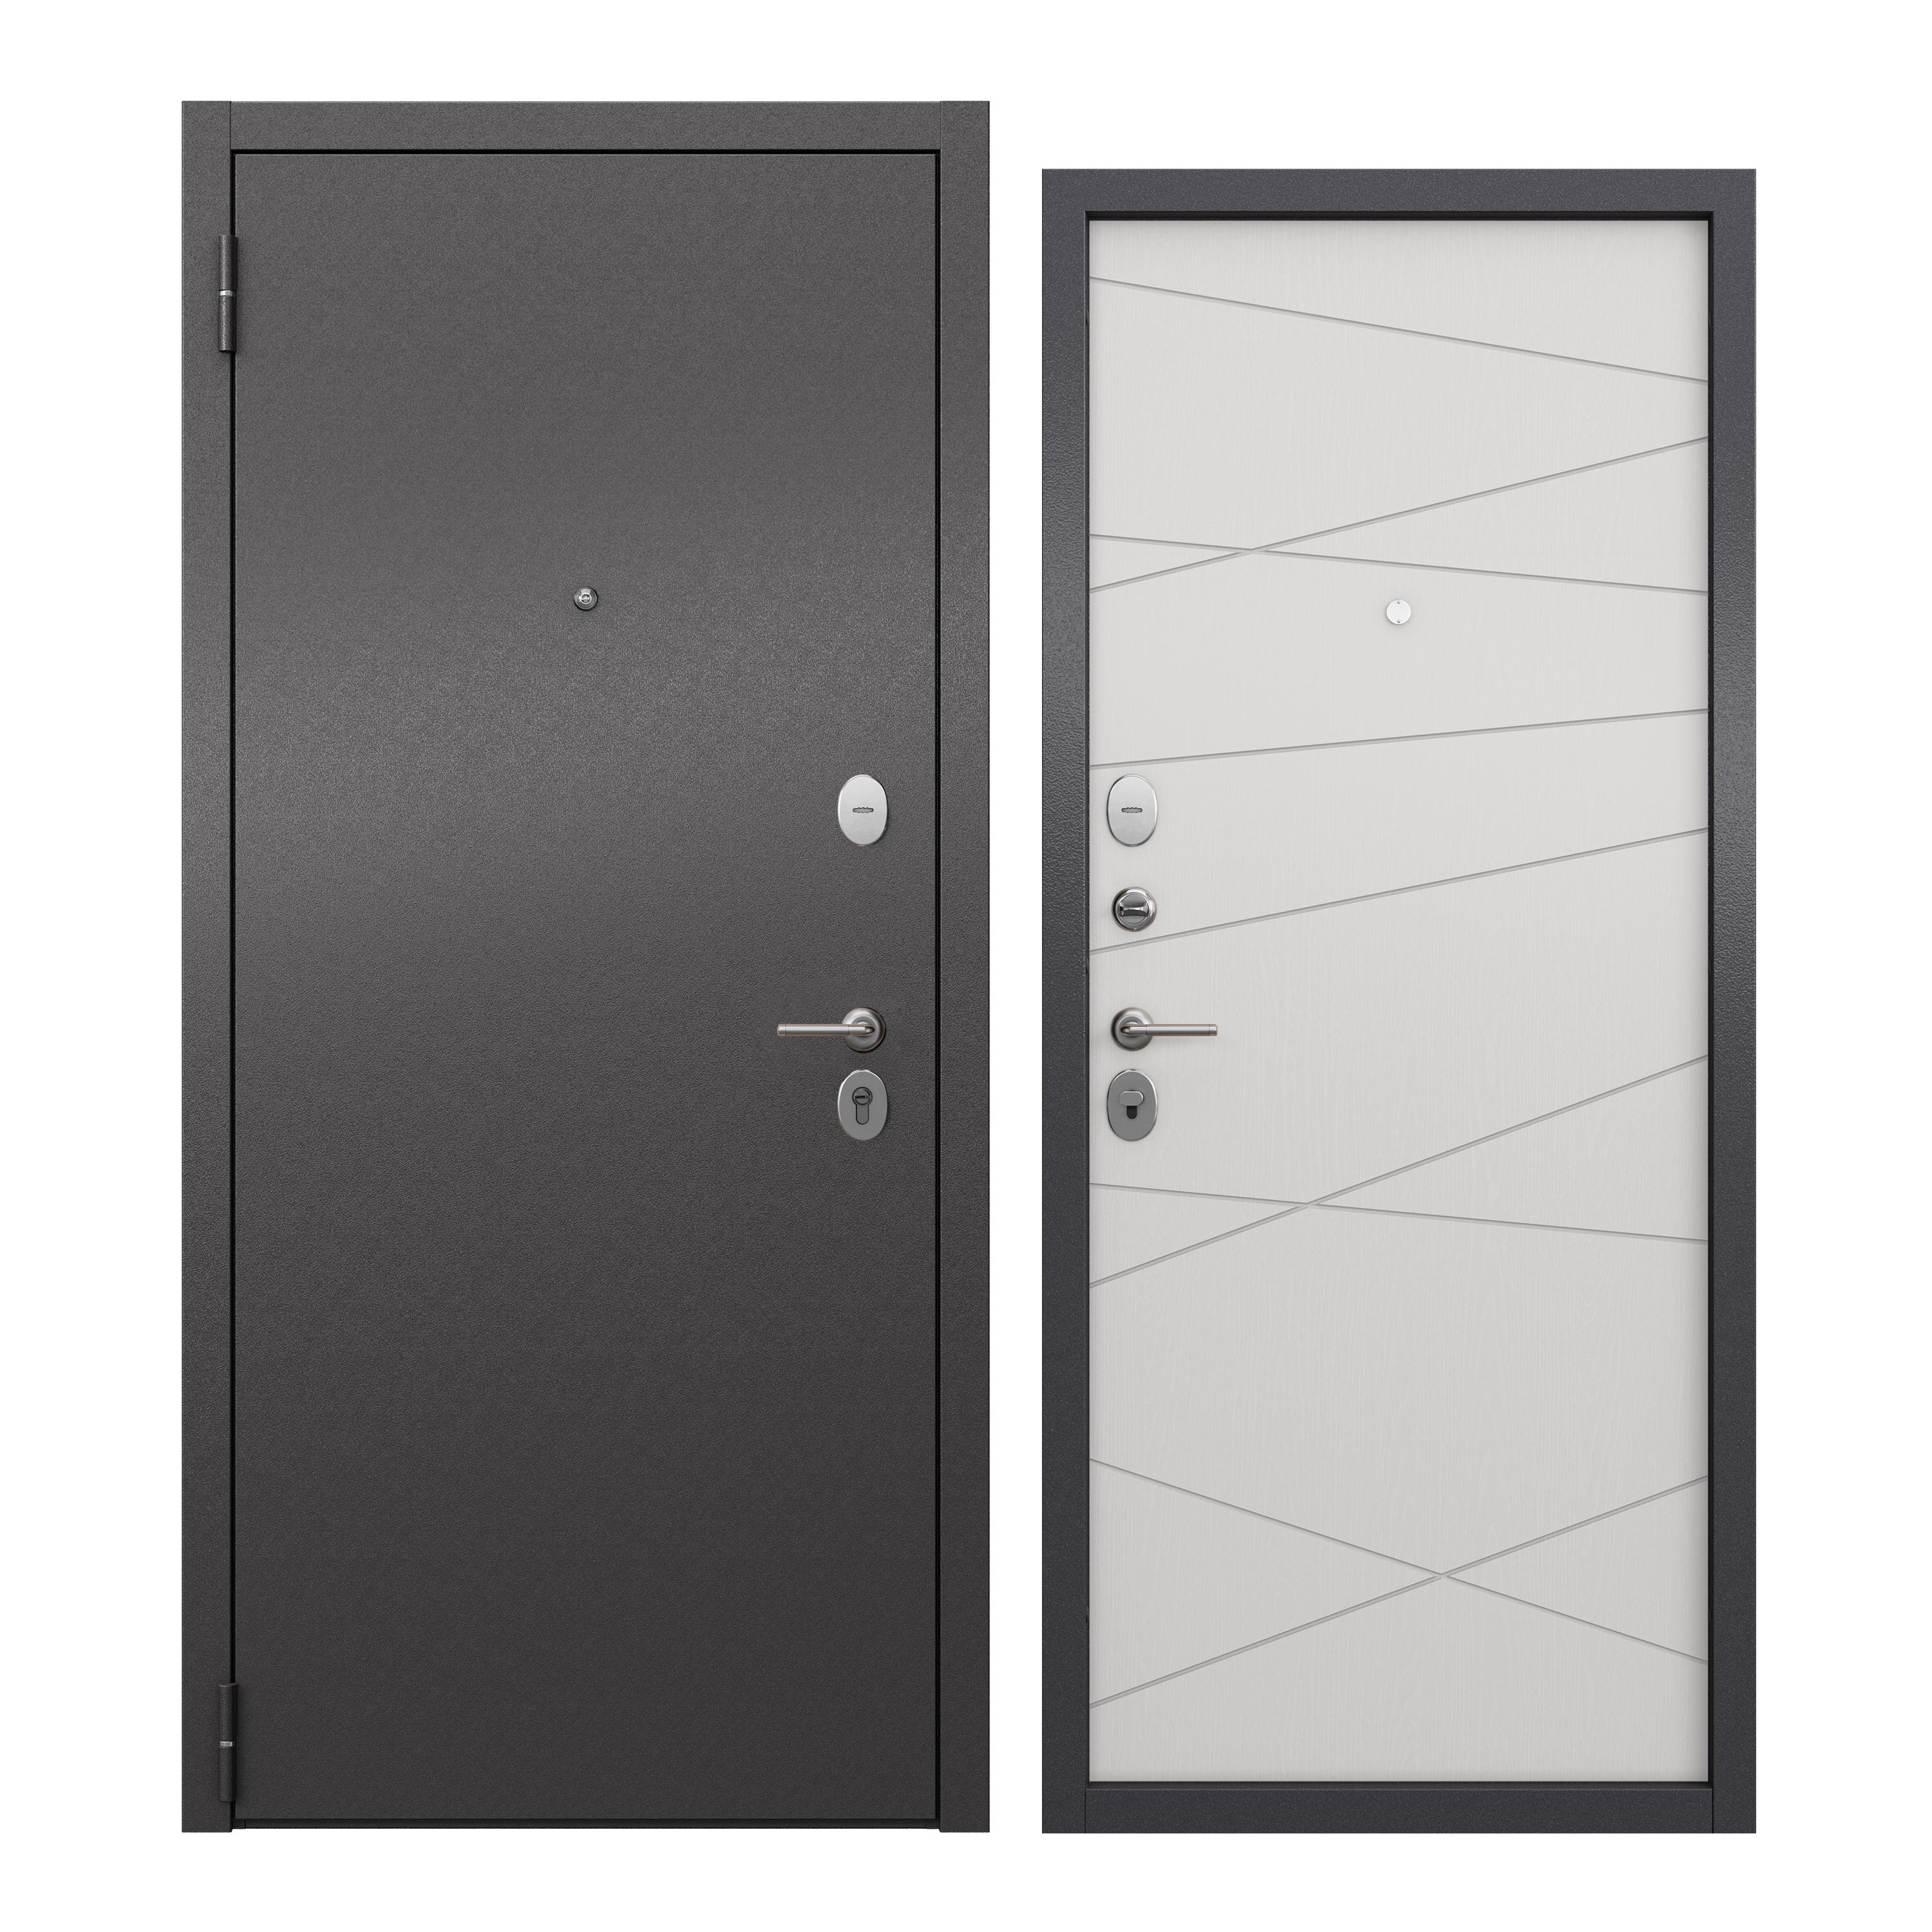 Дверь входная для квартиры ProLine металлическая Apartment X 860х2050, левая, серый/белый